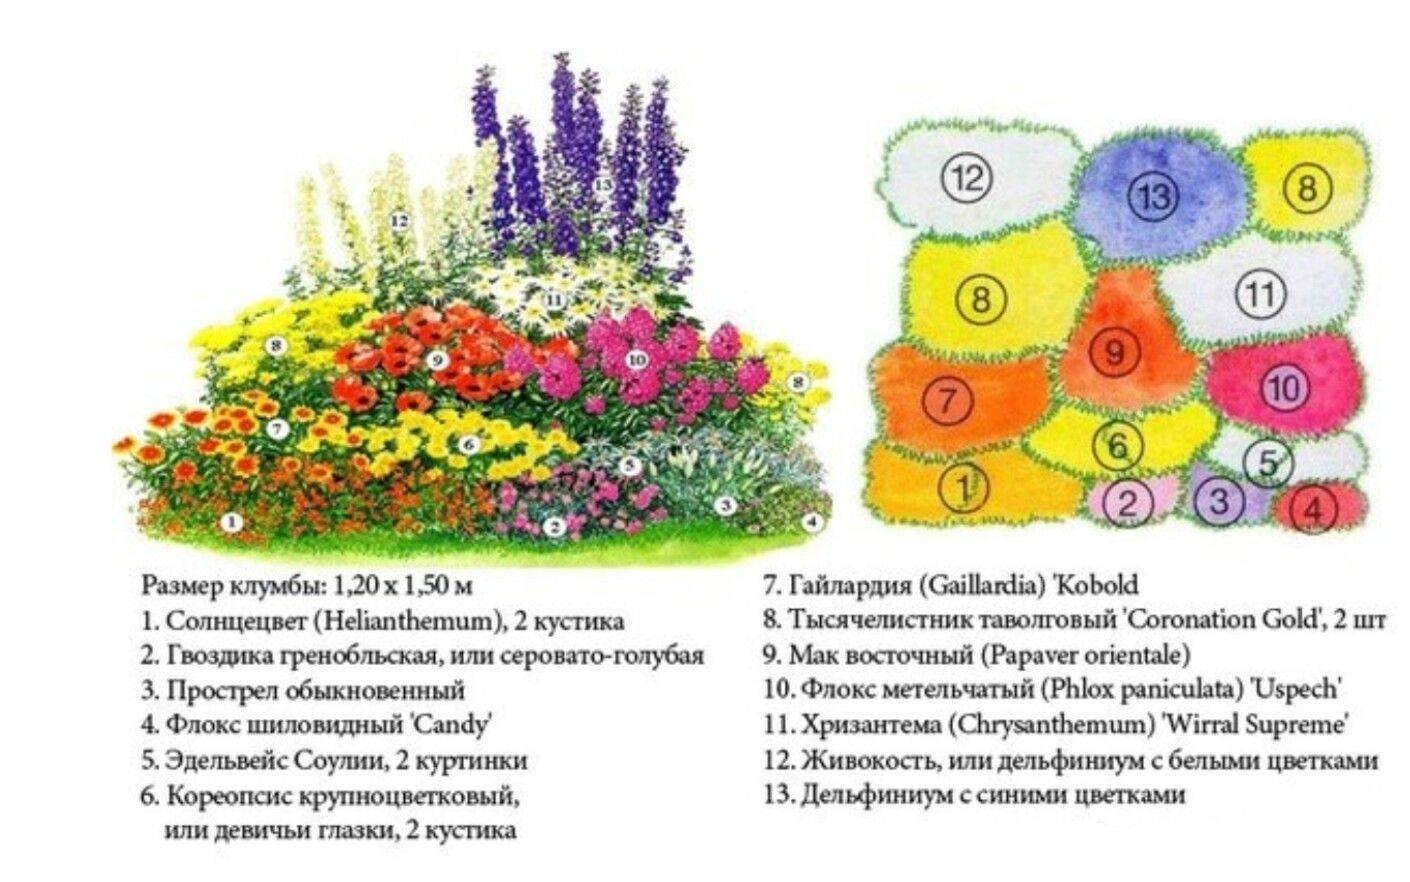 Схемы посадки цветника с тюльпанами (фото) или как красиво посадить тюльпаны?